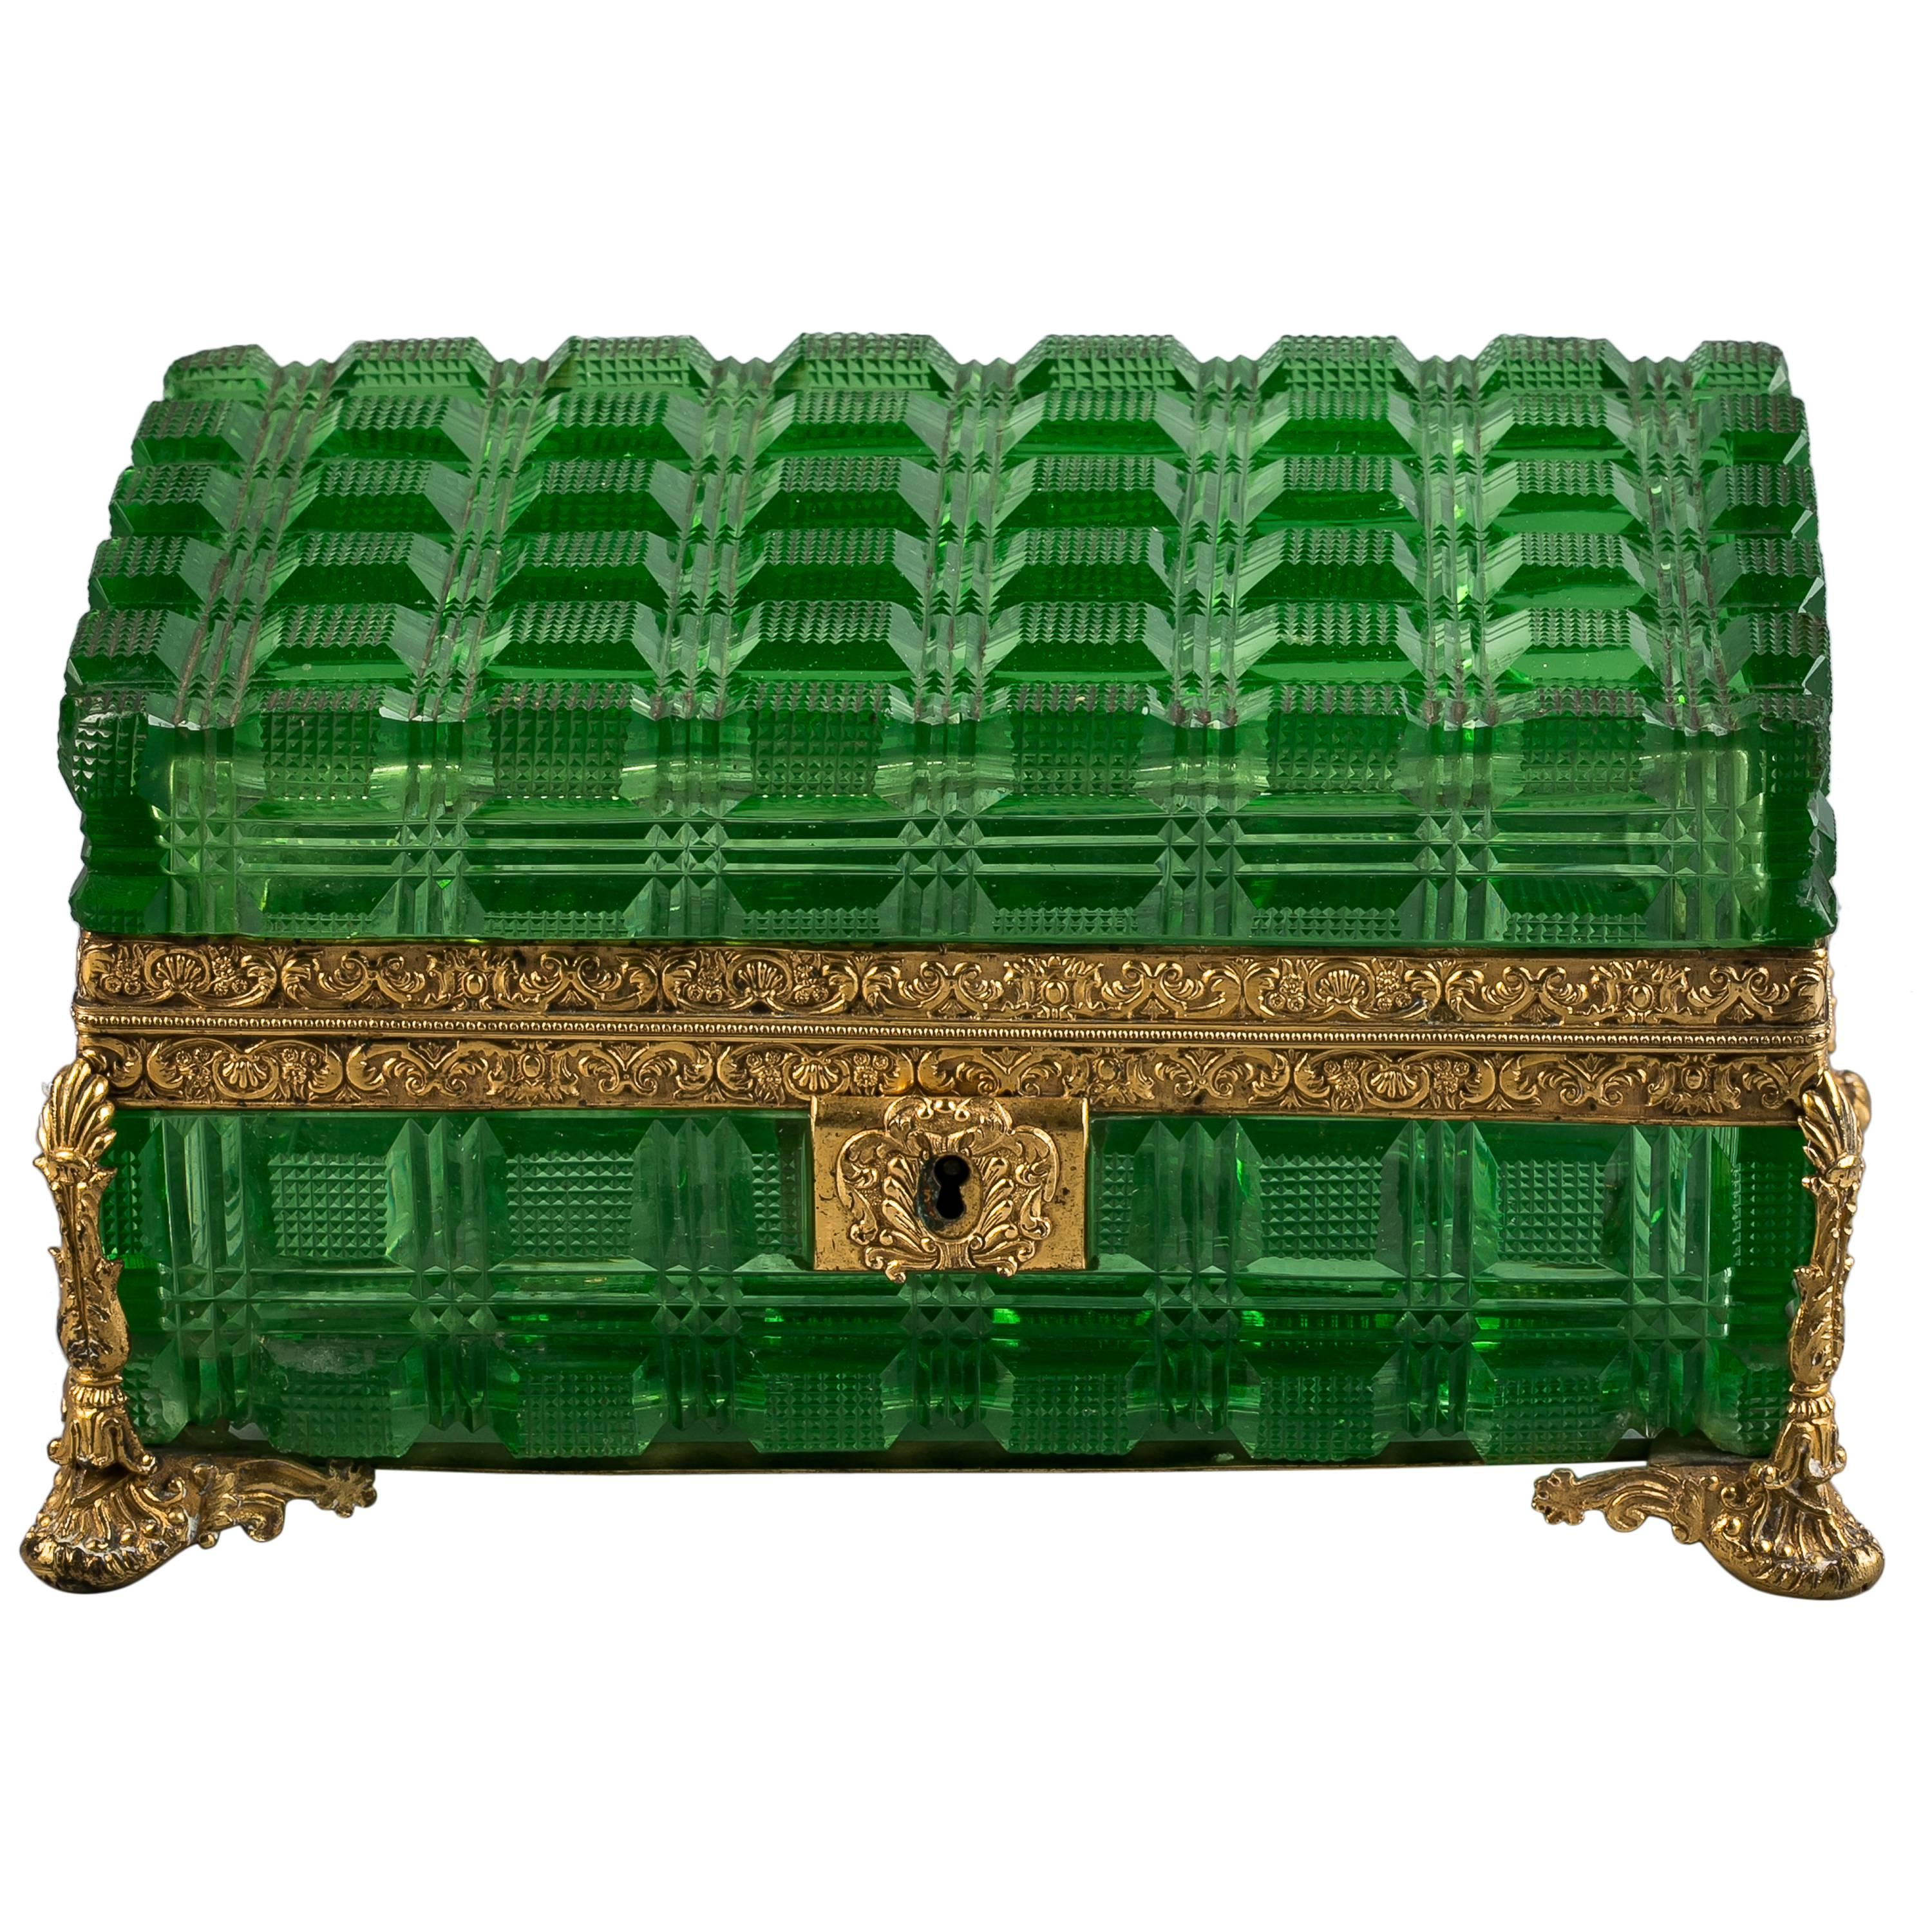 Grande boîte en bronze et verre vert, russe, datant d'environ 1825